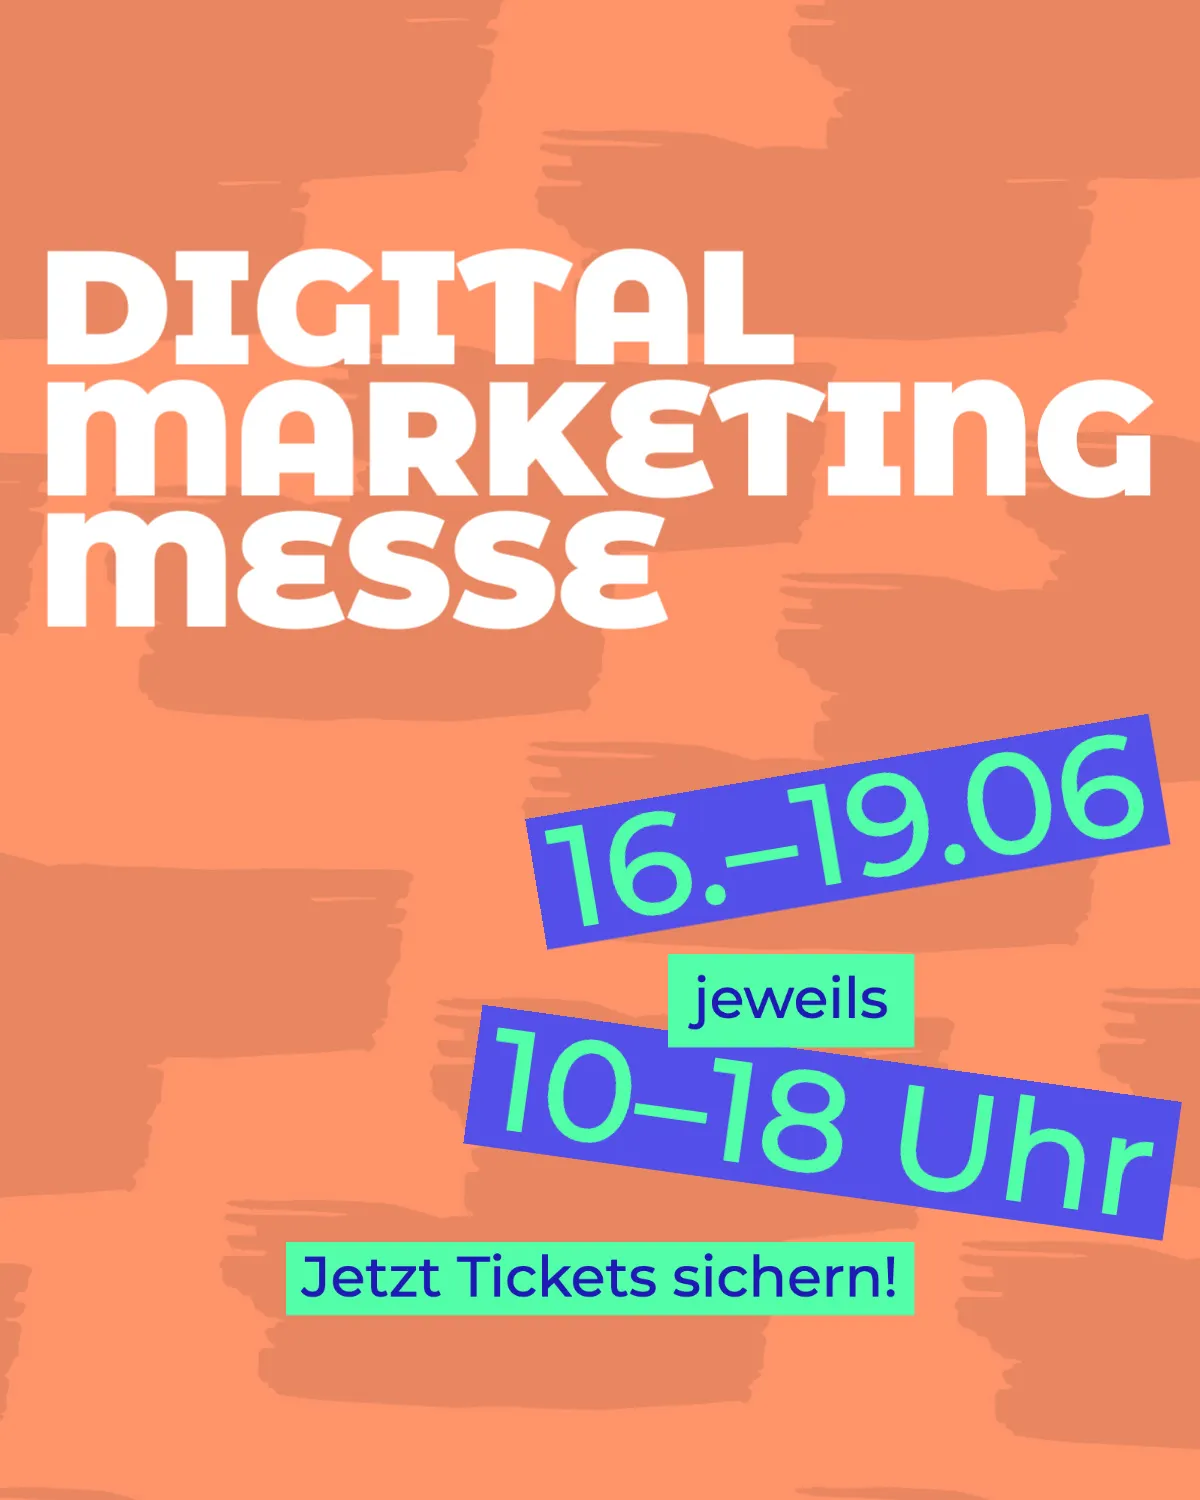 Orange and Blue Digital Marketing Conference Instagram Ad